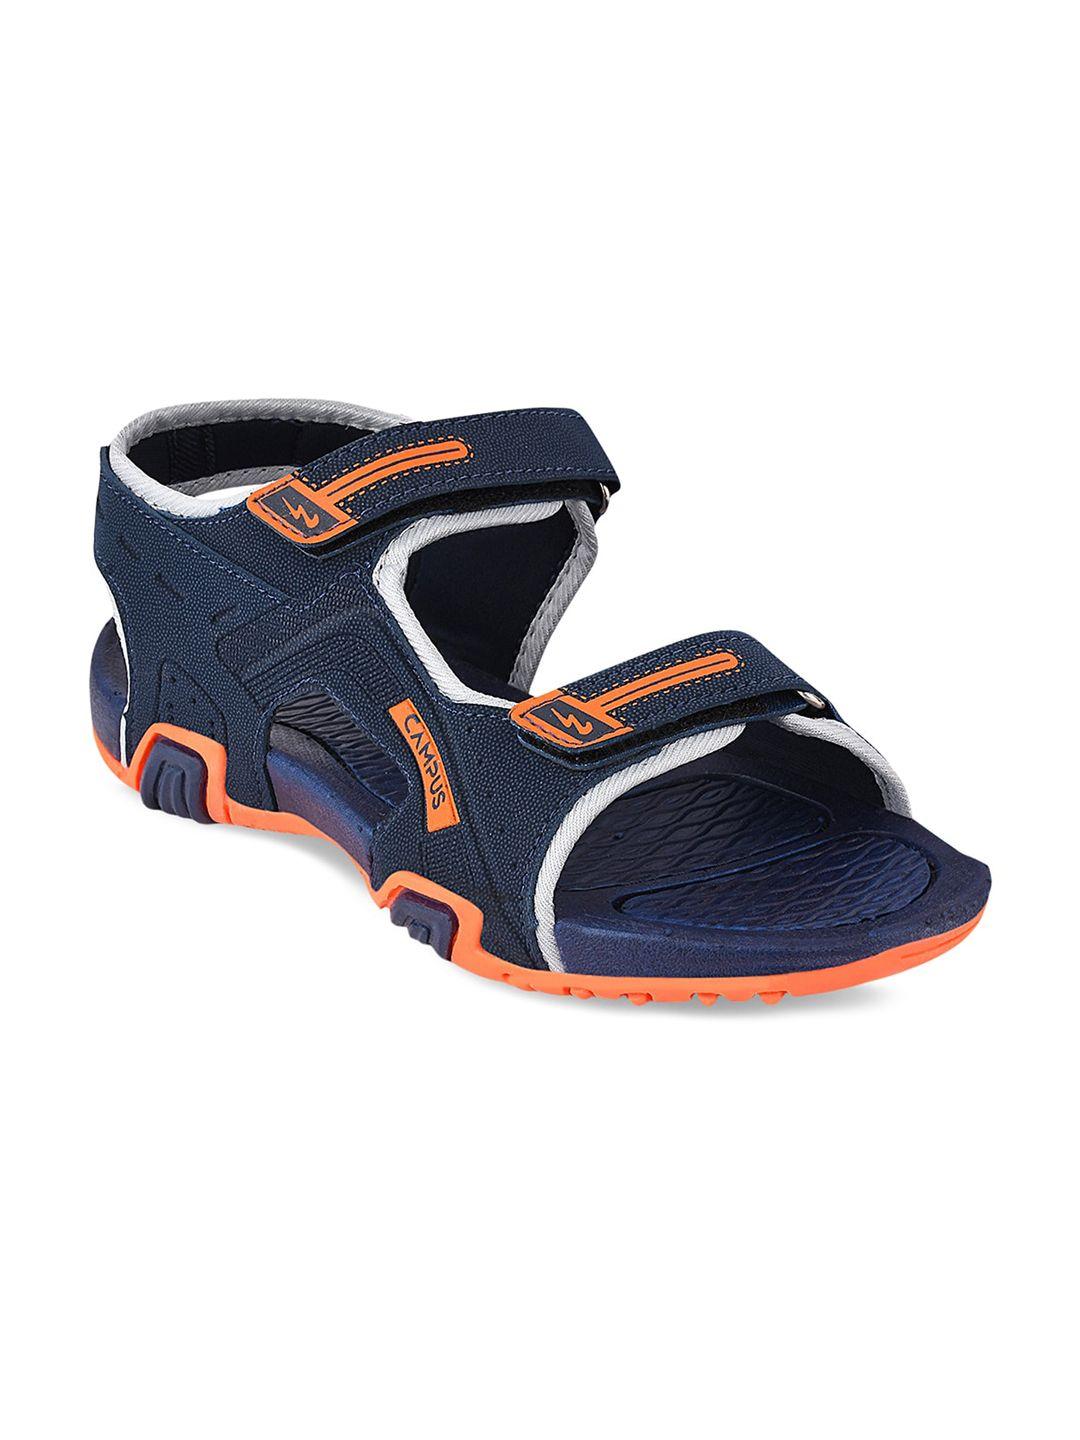 campus unisex kids navy blue & orange solid sports sandals